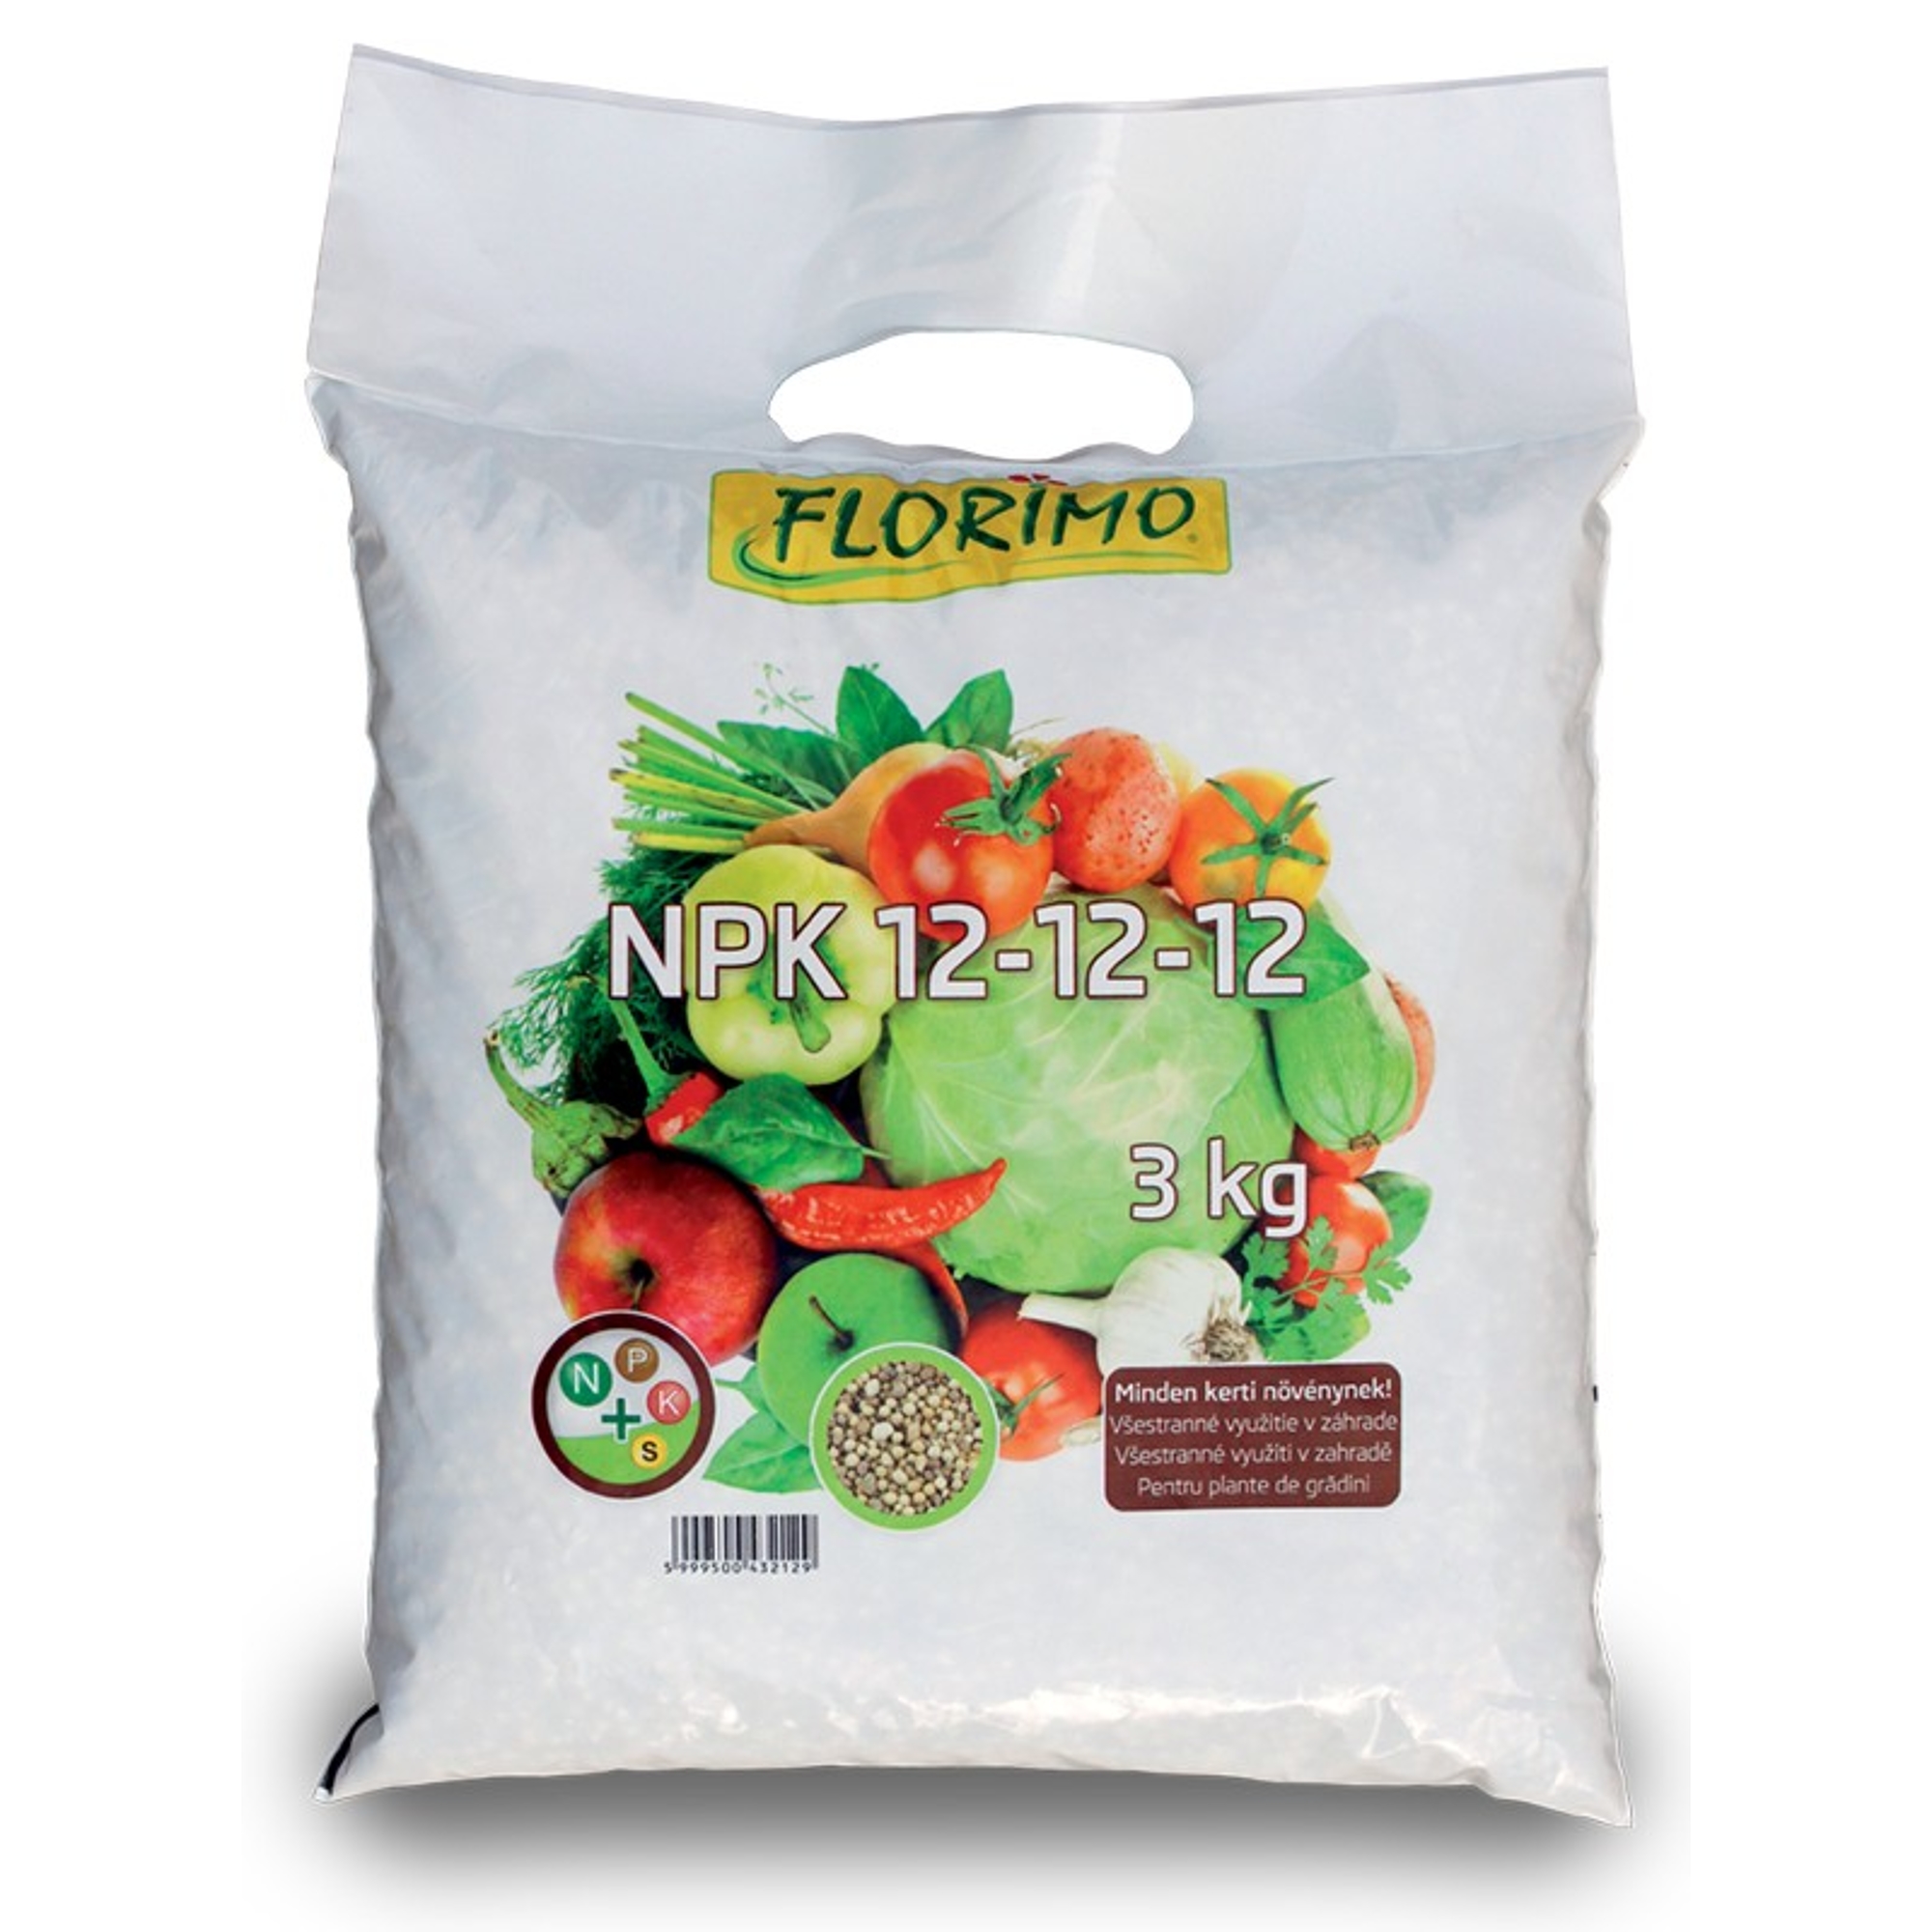 FLORIMO NPK 12-12-12 ásványi trágya 3 kg